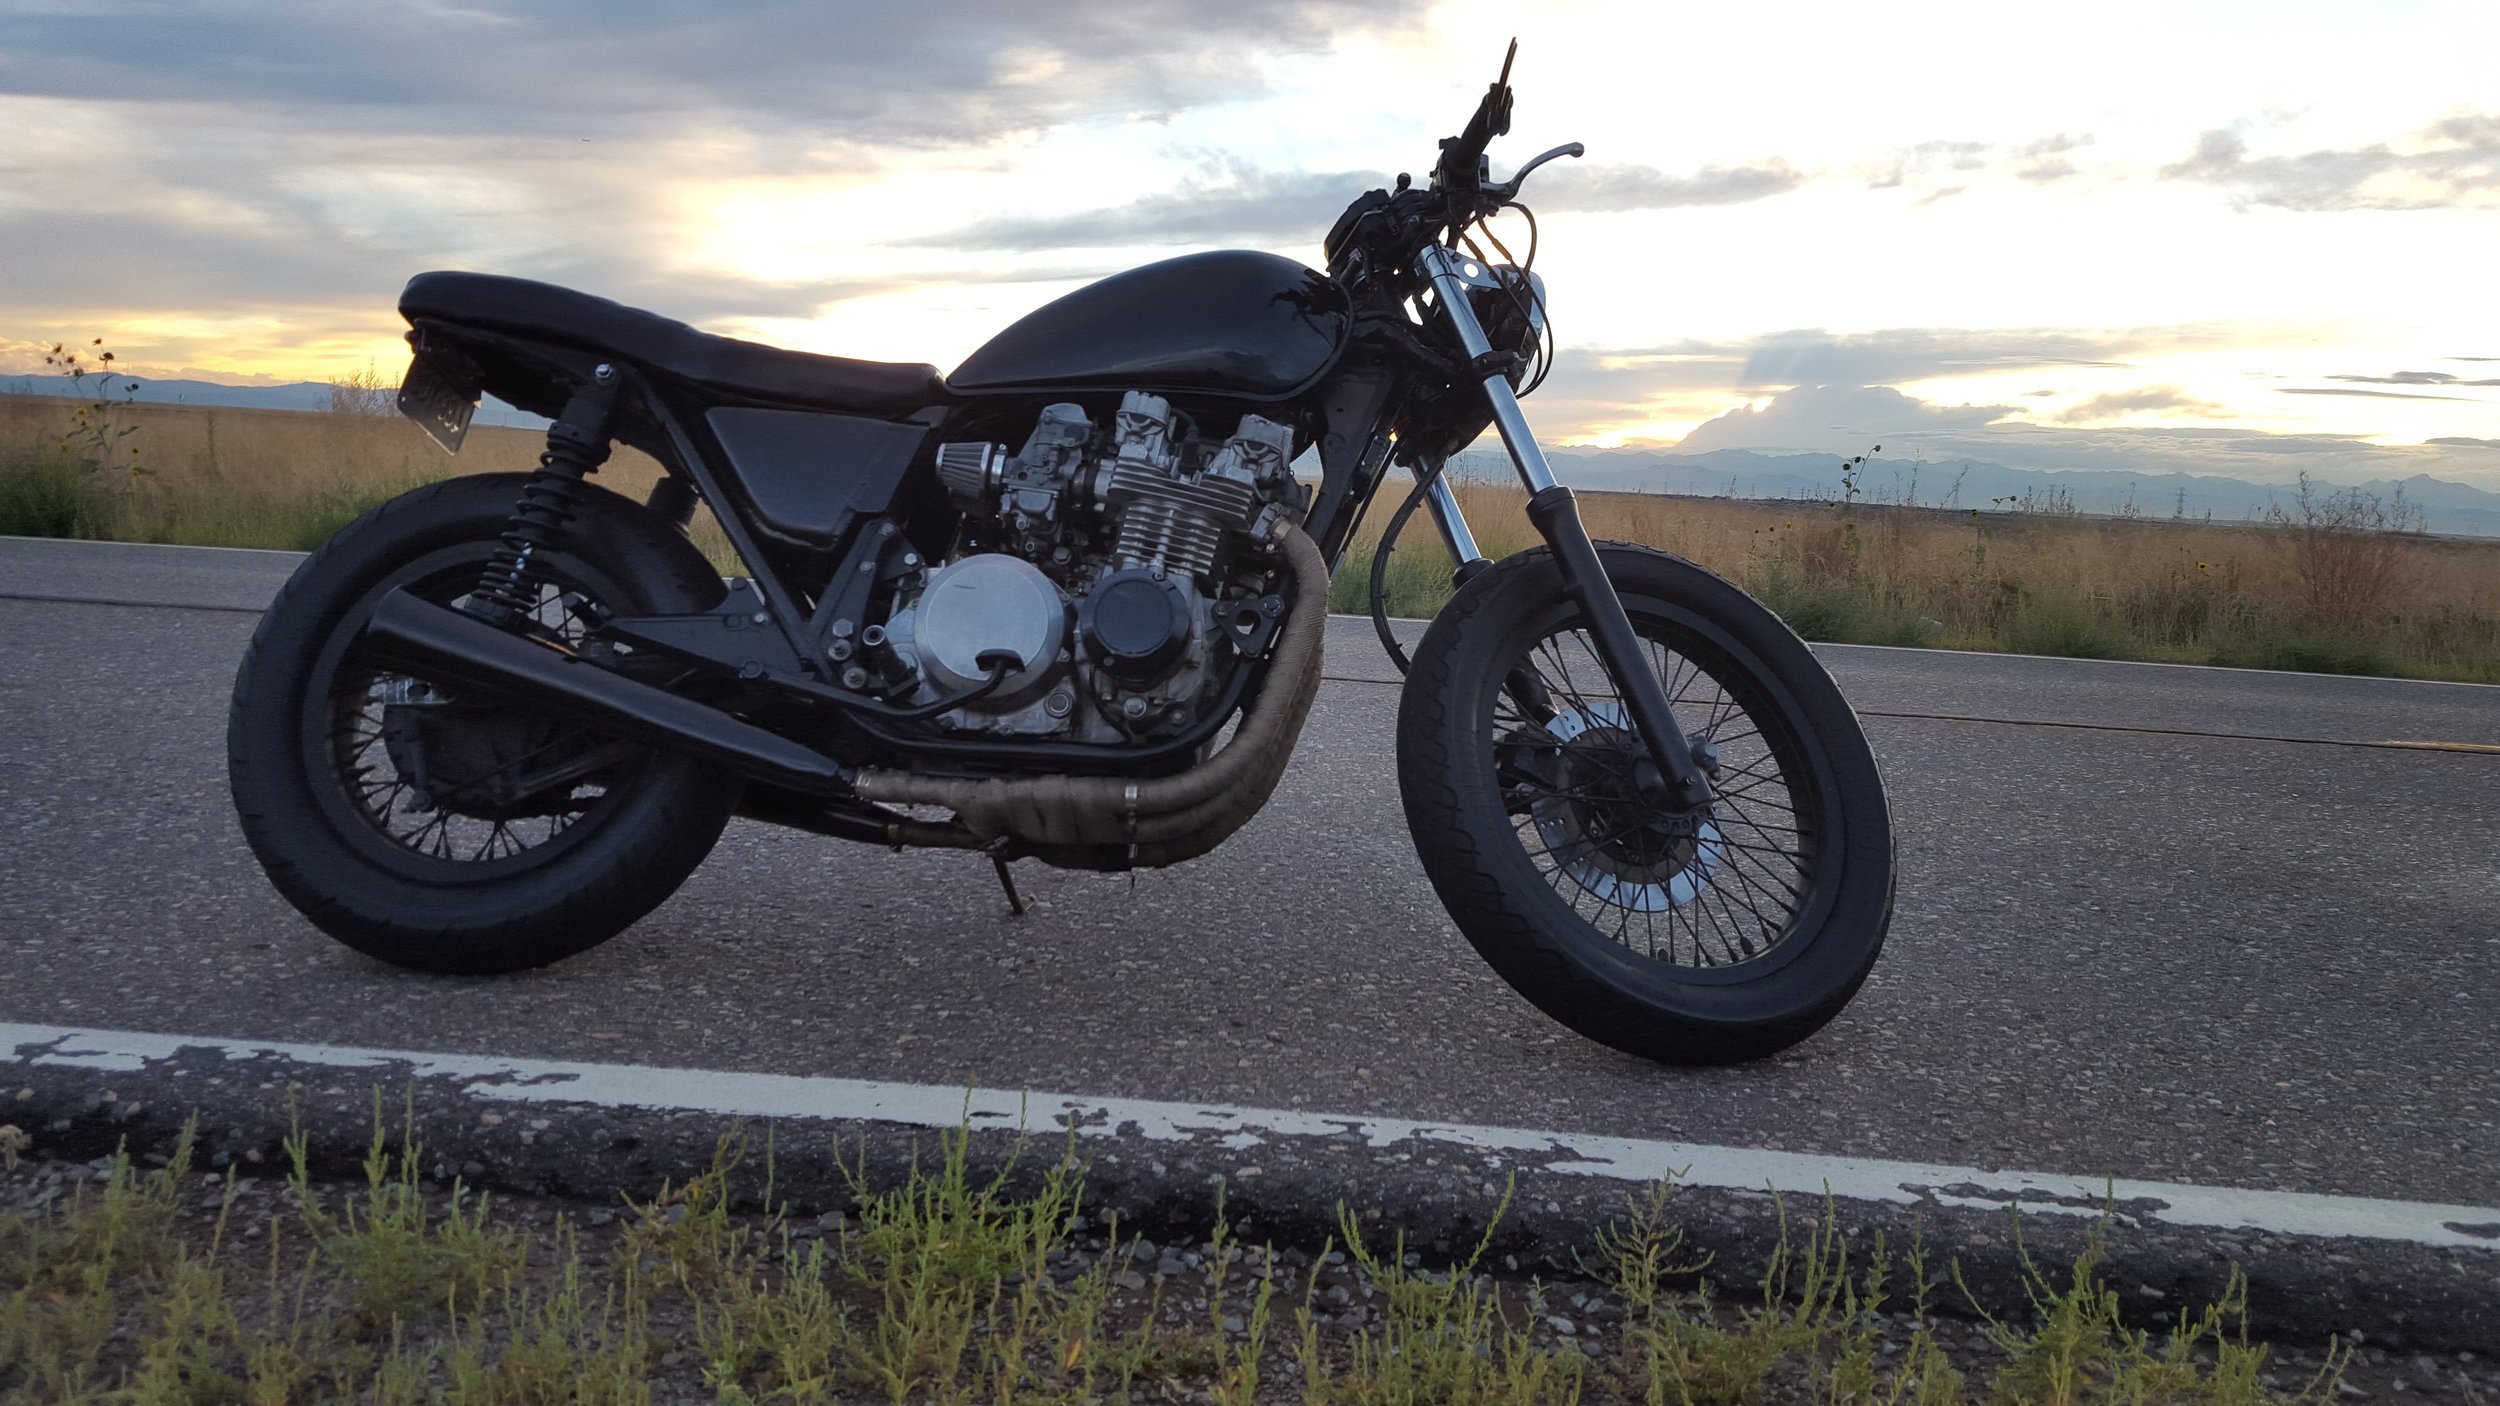 KZ650 brat lake motorcycle